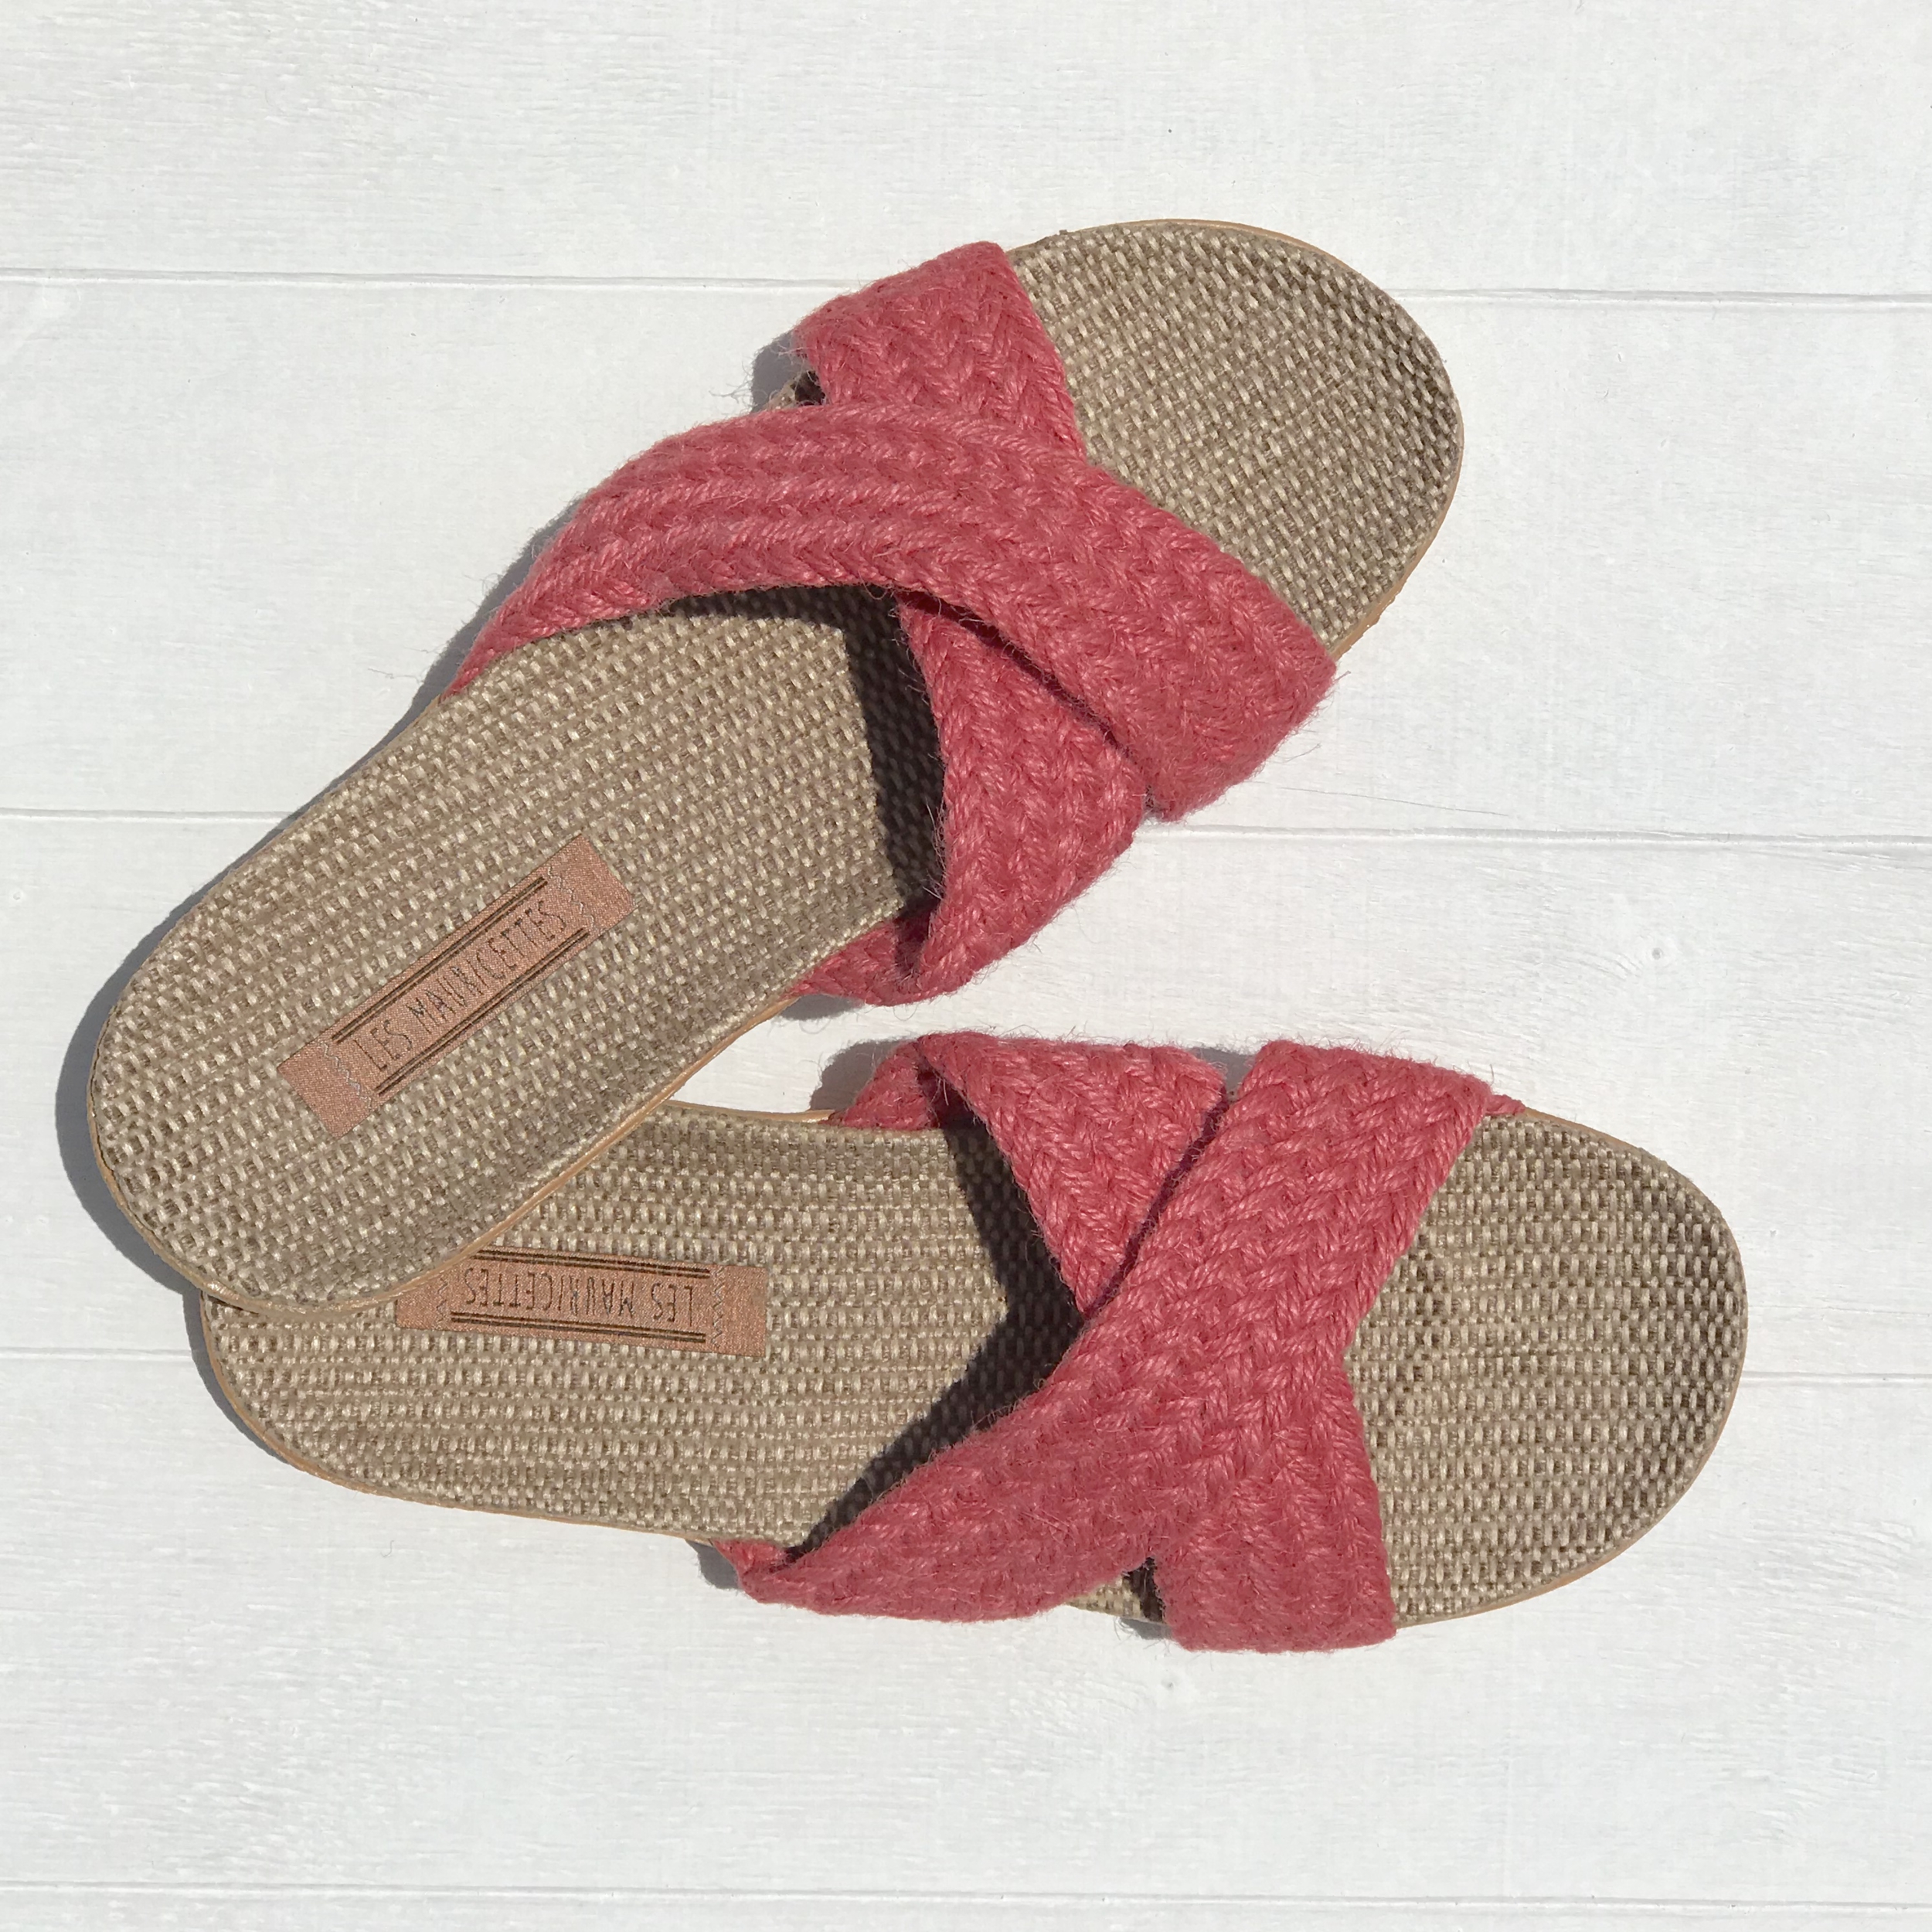 sylvette4 les mauricettes sandalettes légères et confort